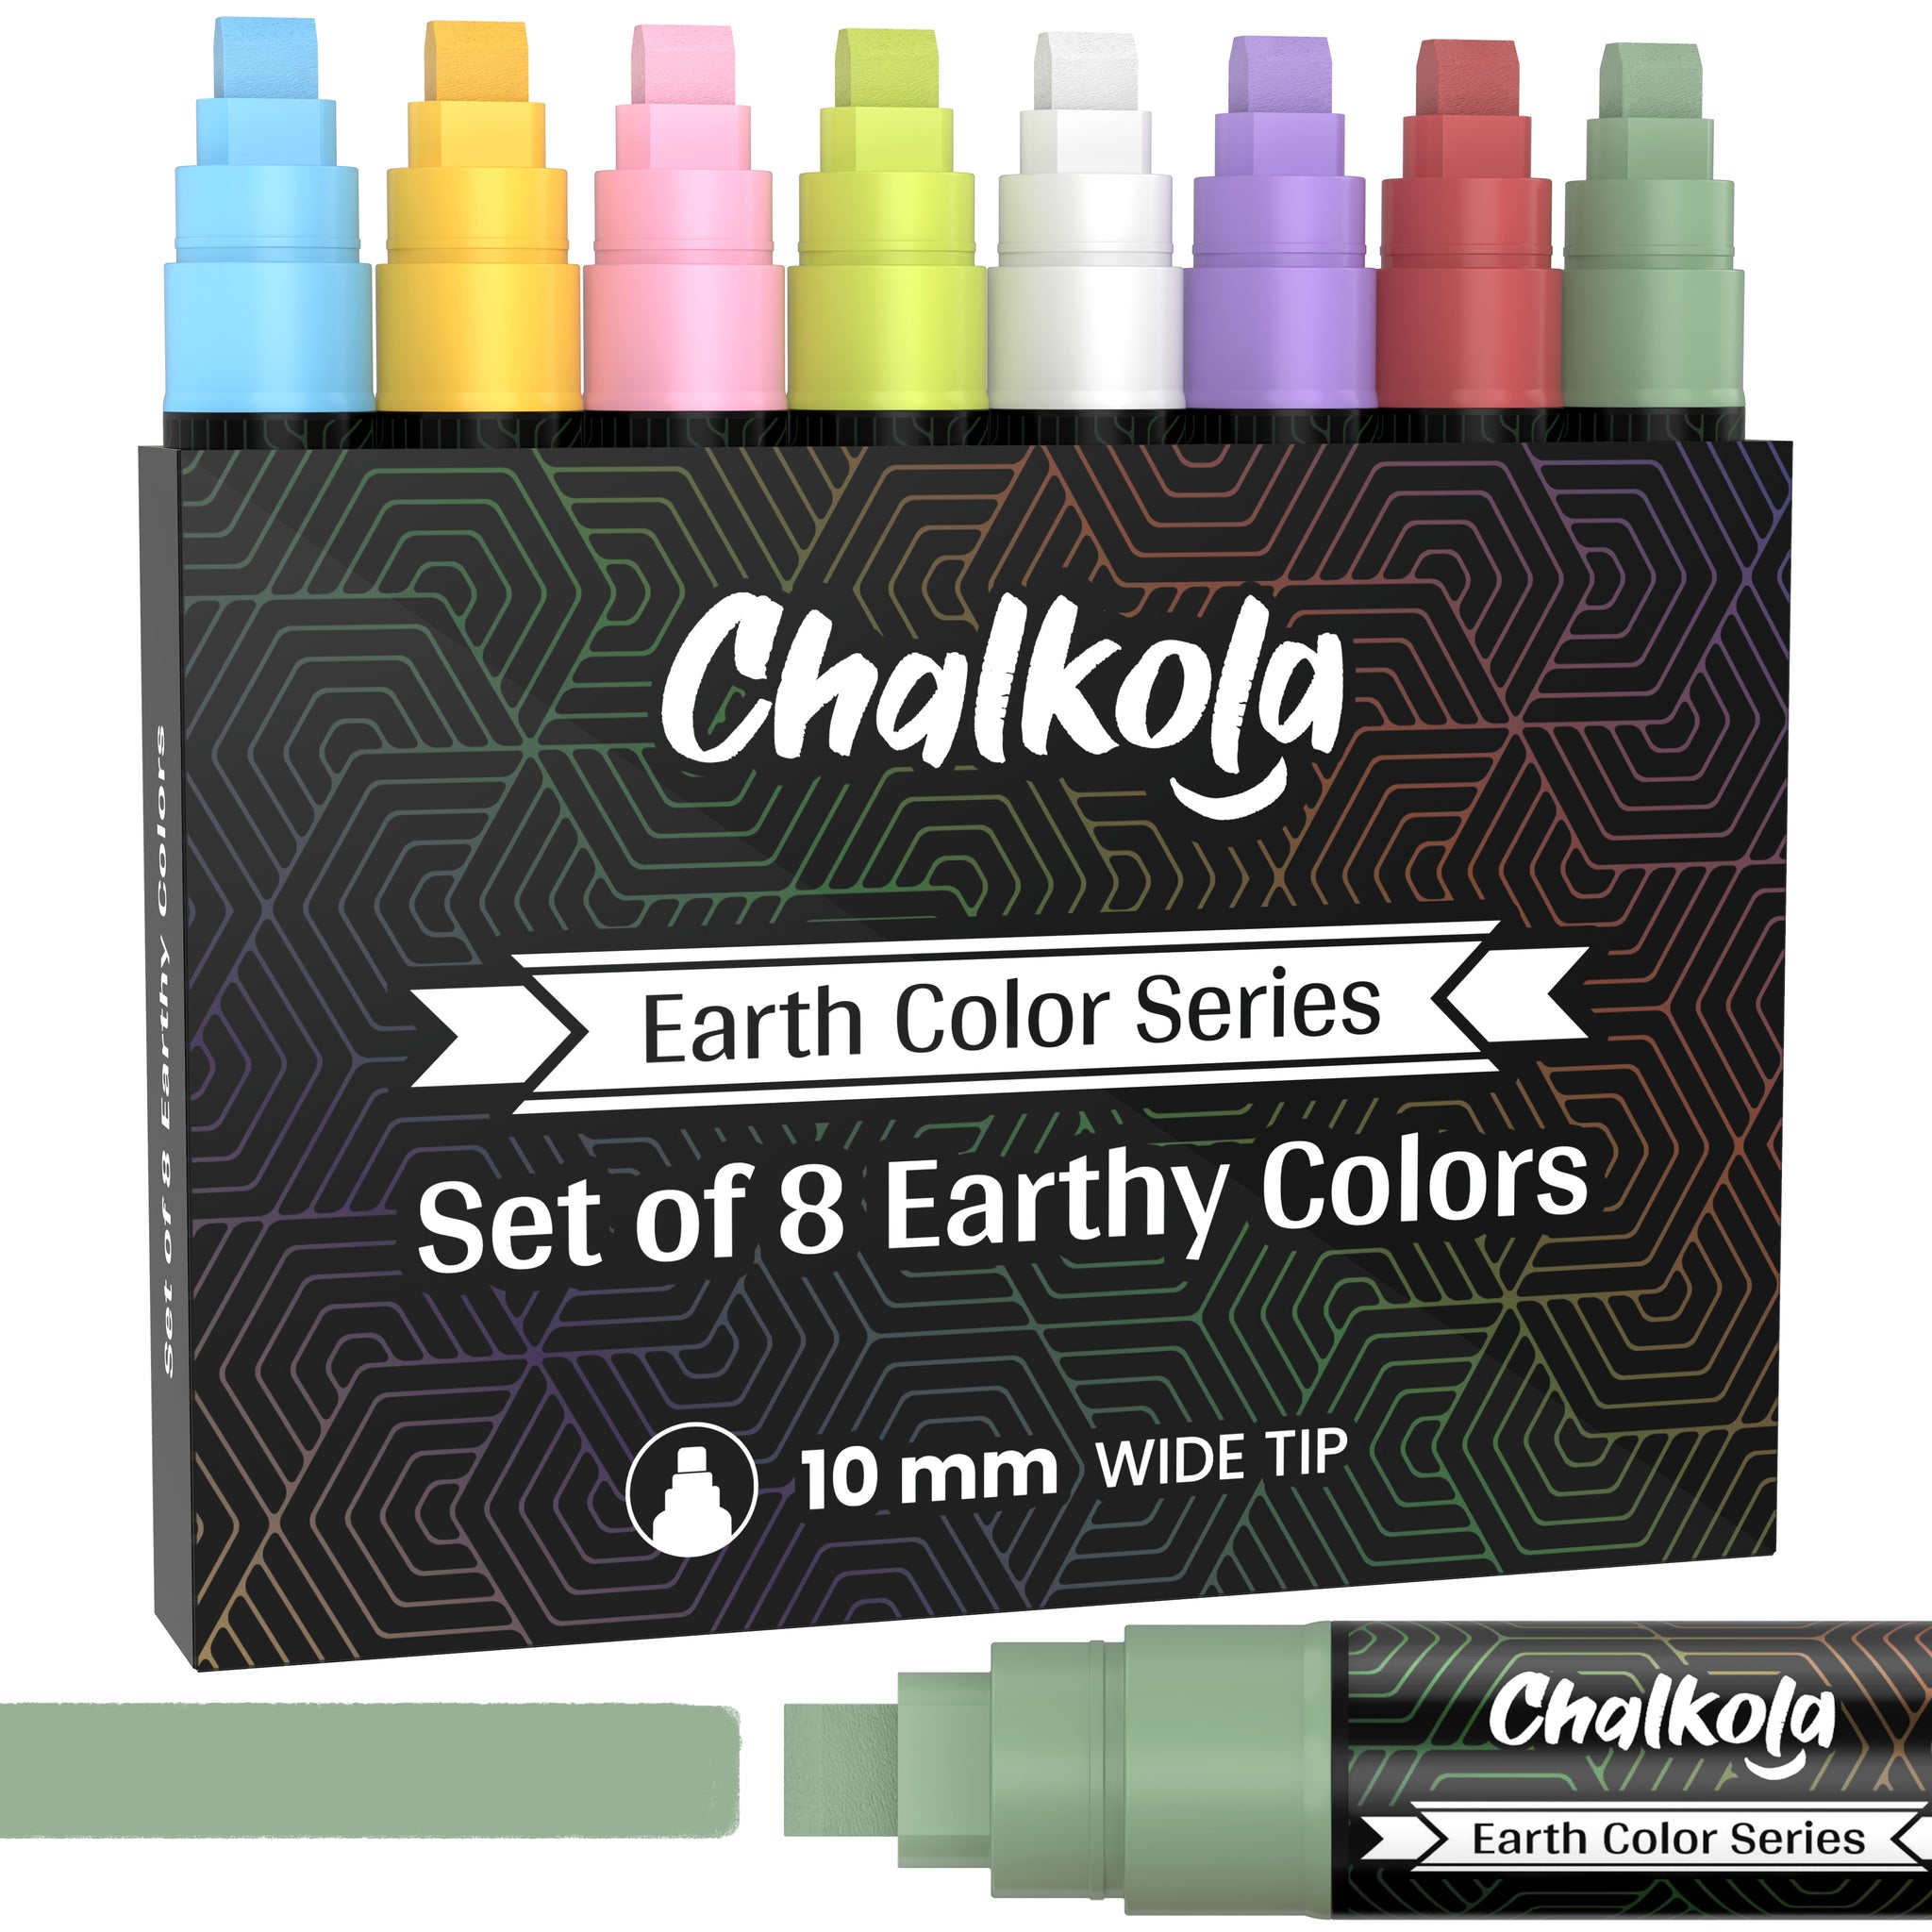 Chalkola chk_5_yellow_markers 5 Yellow Chalkboard Chalk Markers